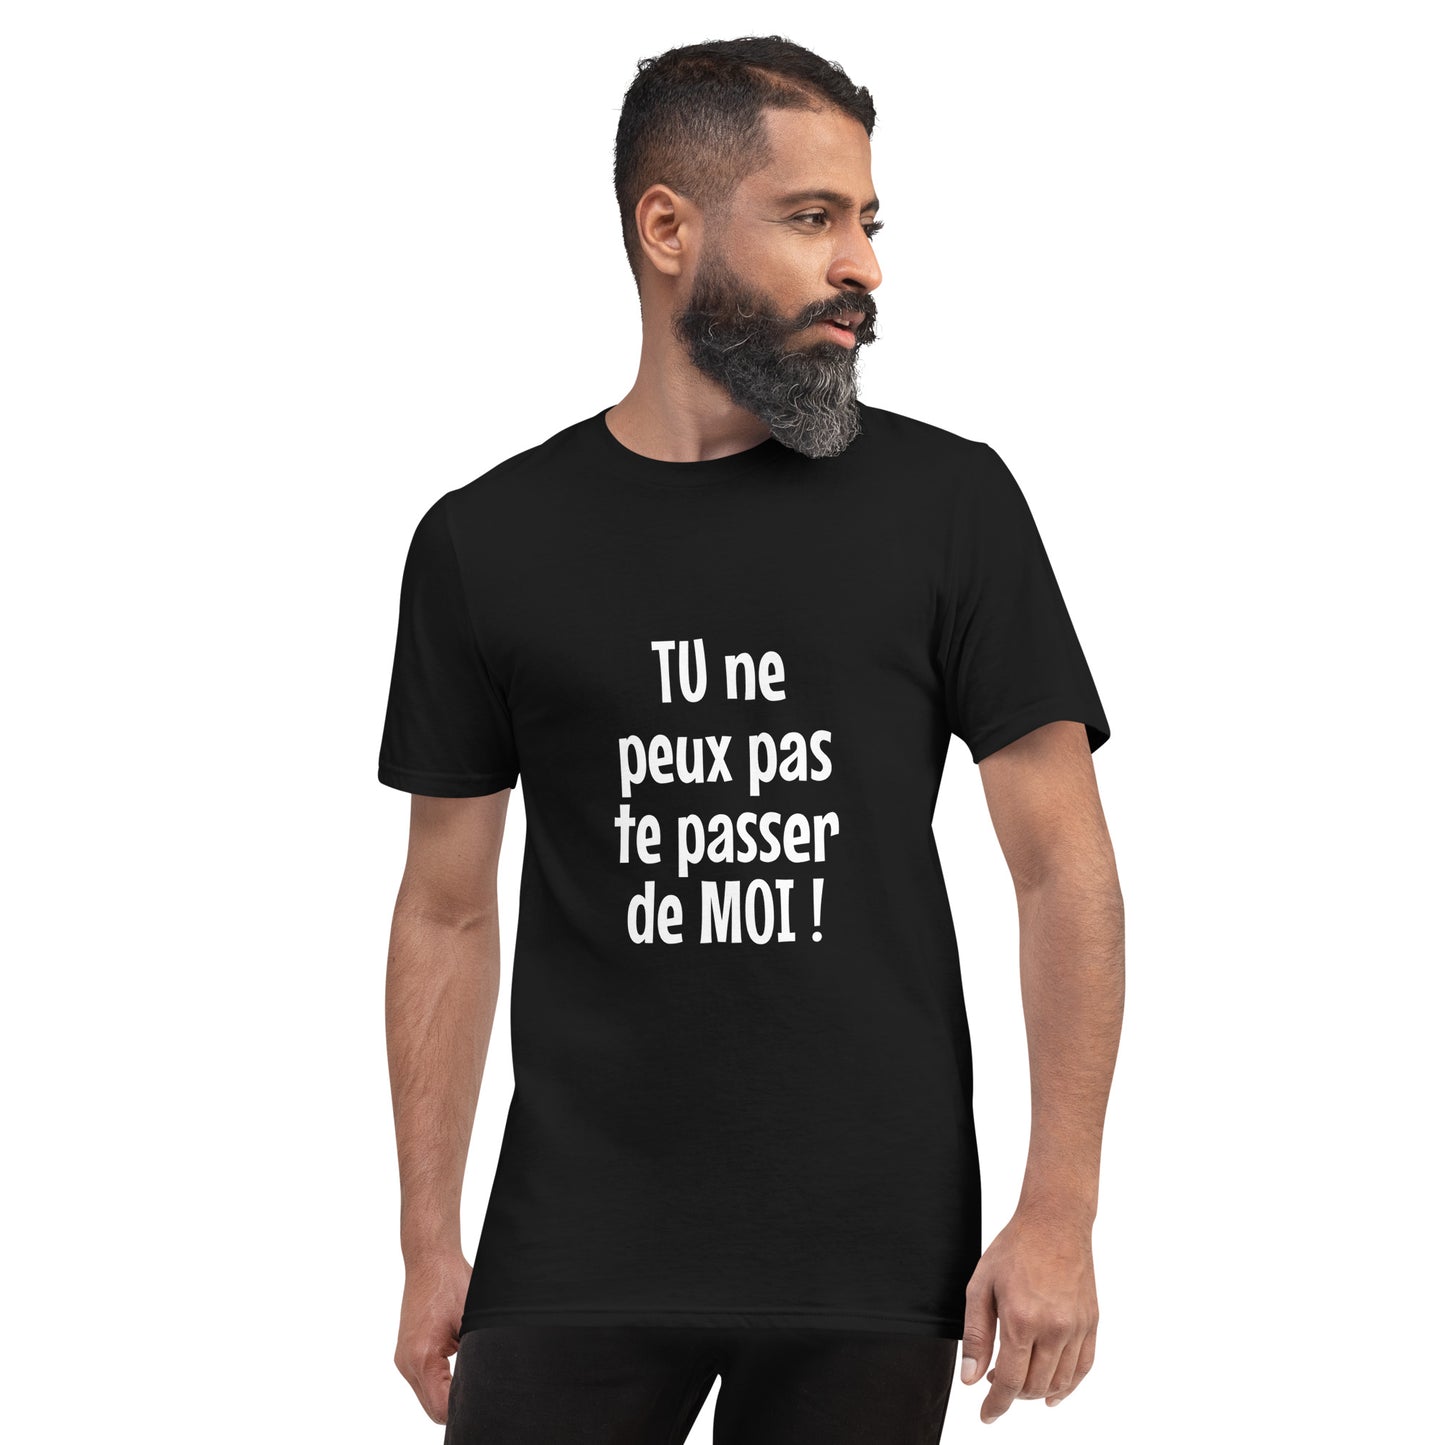 Tu ne peux pas te passer de moi - Men's T-Shirt